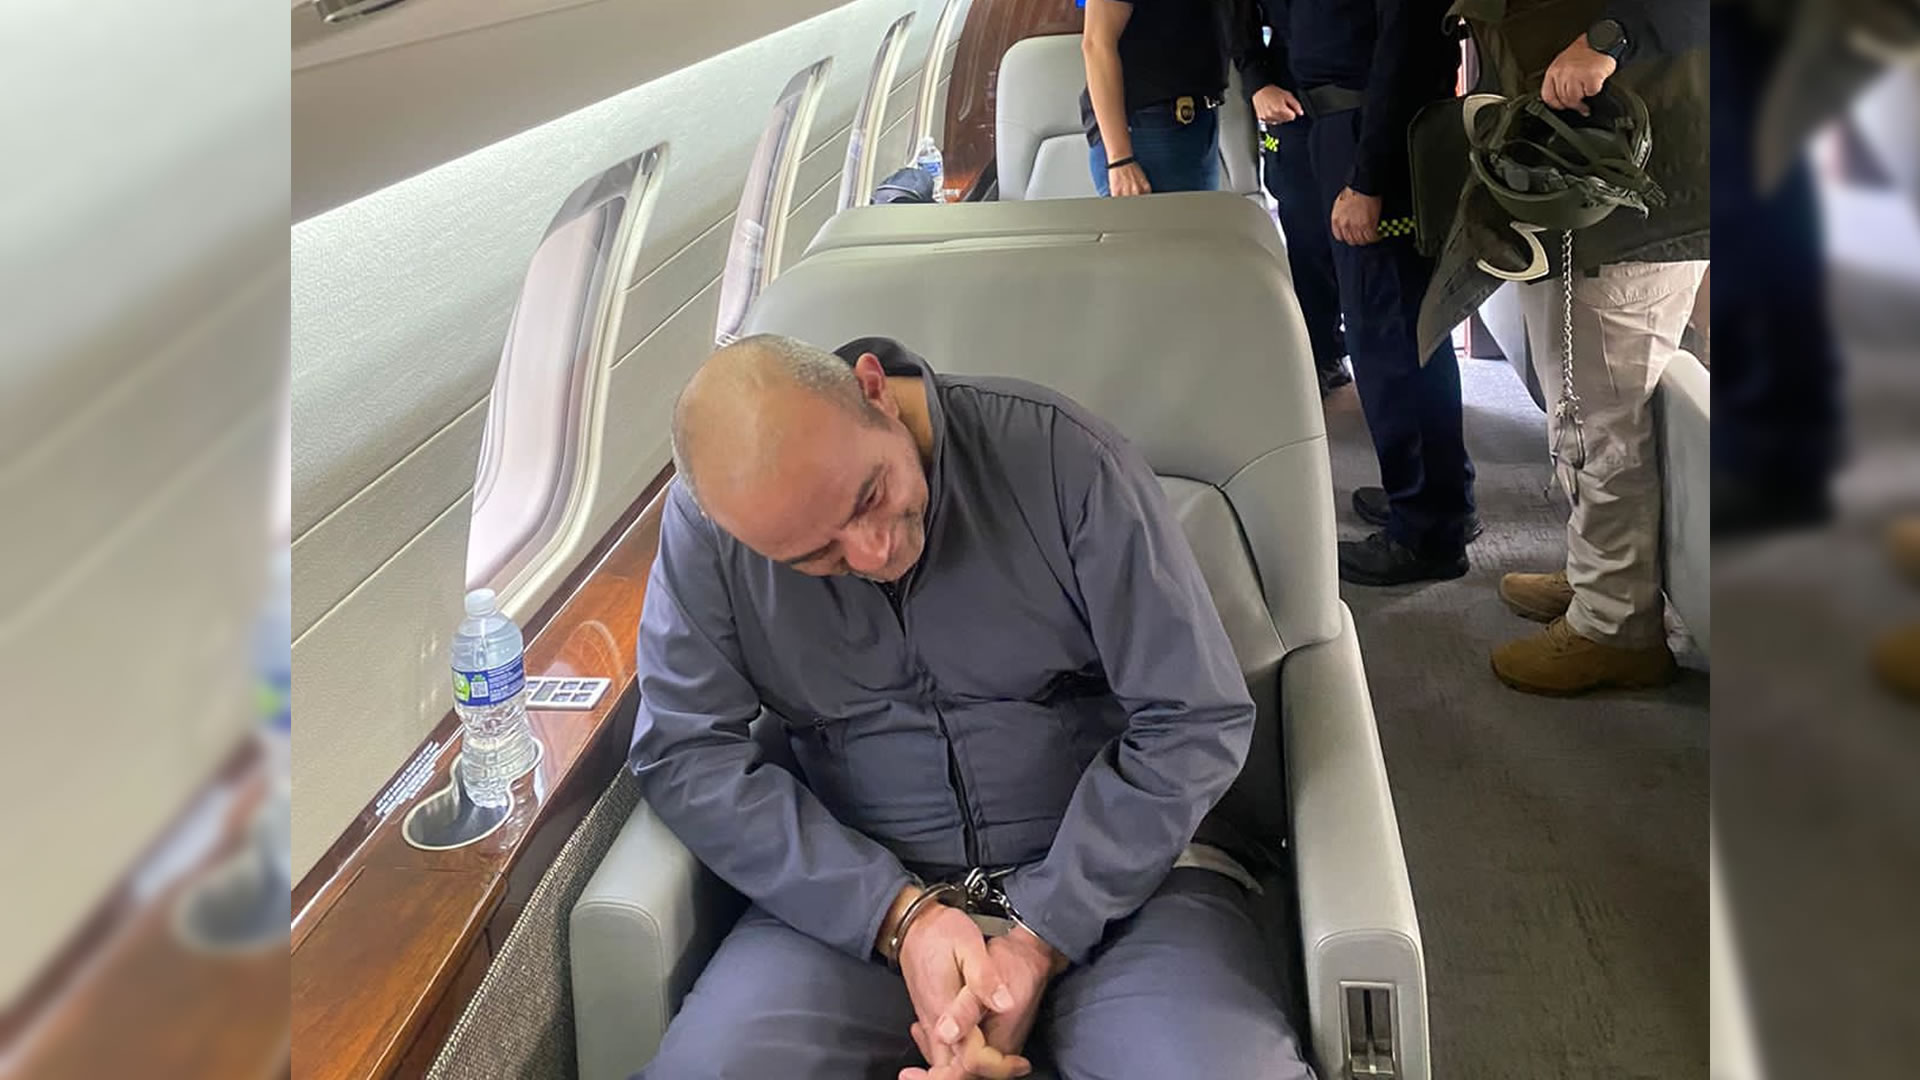 El presidente de Colombia, Iván Duque, confirmó la extradición del máximo jefe del Clan del Golfo a los Estados Unidos por el delito de narcotráfico, lo que ocasionó una serie de reacciones en el país político .